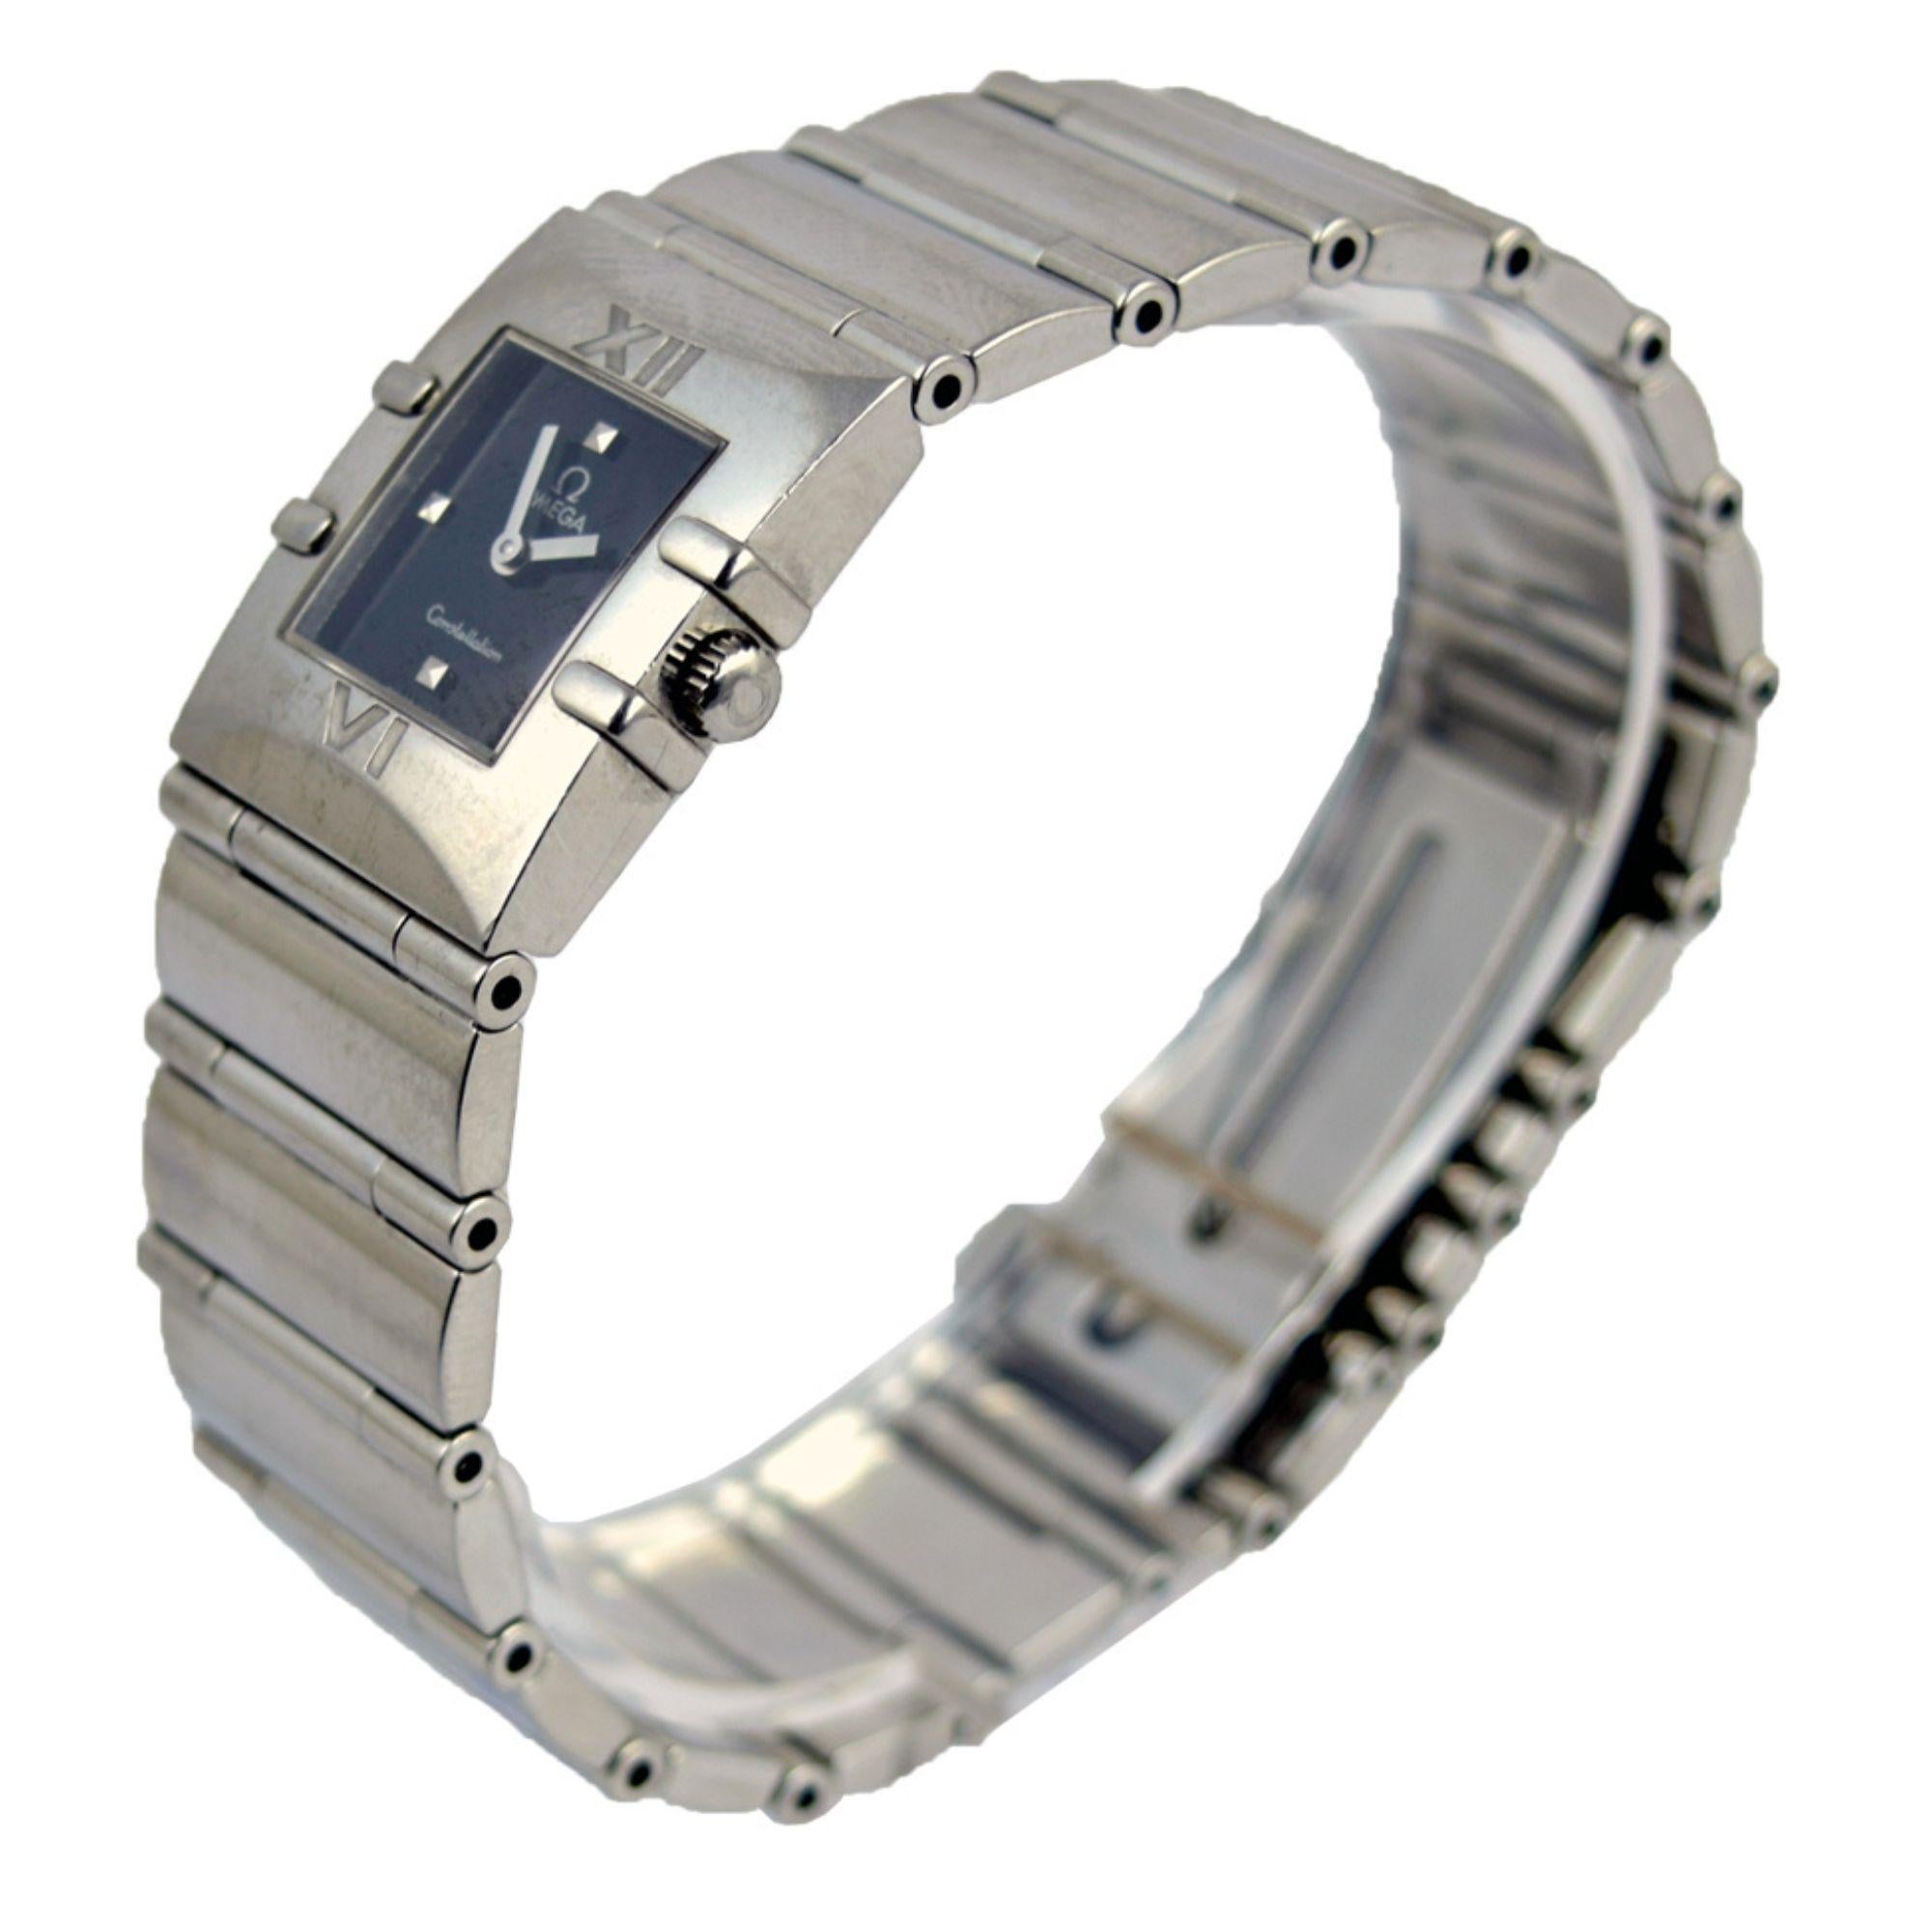 La montre Omega Constellation Quadra est fabriquée en acier inoxydable. Elle présente une élégante lunette carrée avec des chiffres romains gravés sur un cadran noir. Aiguilles et indicateurs d'heures luminescents. Le bracelet est doté d'une